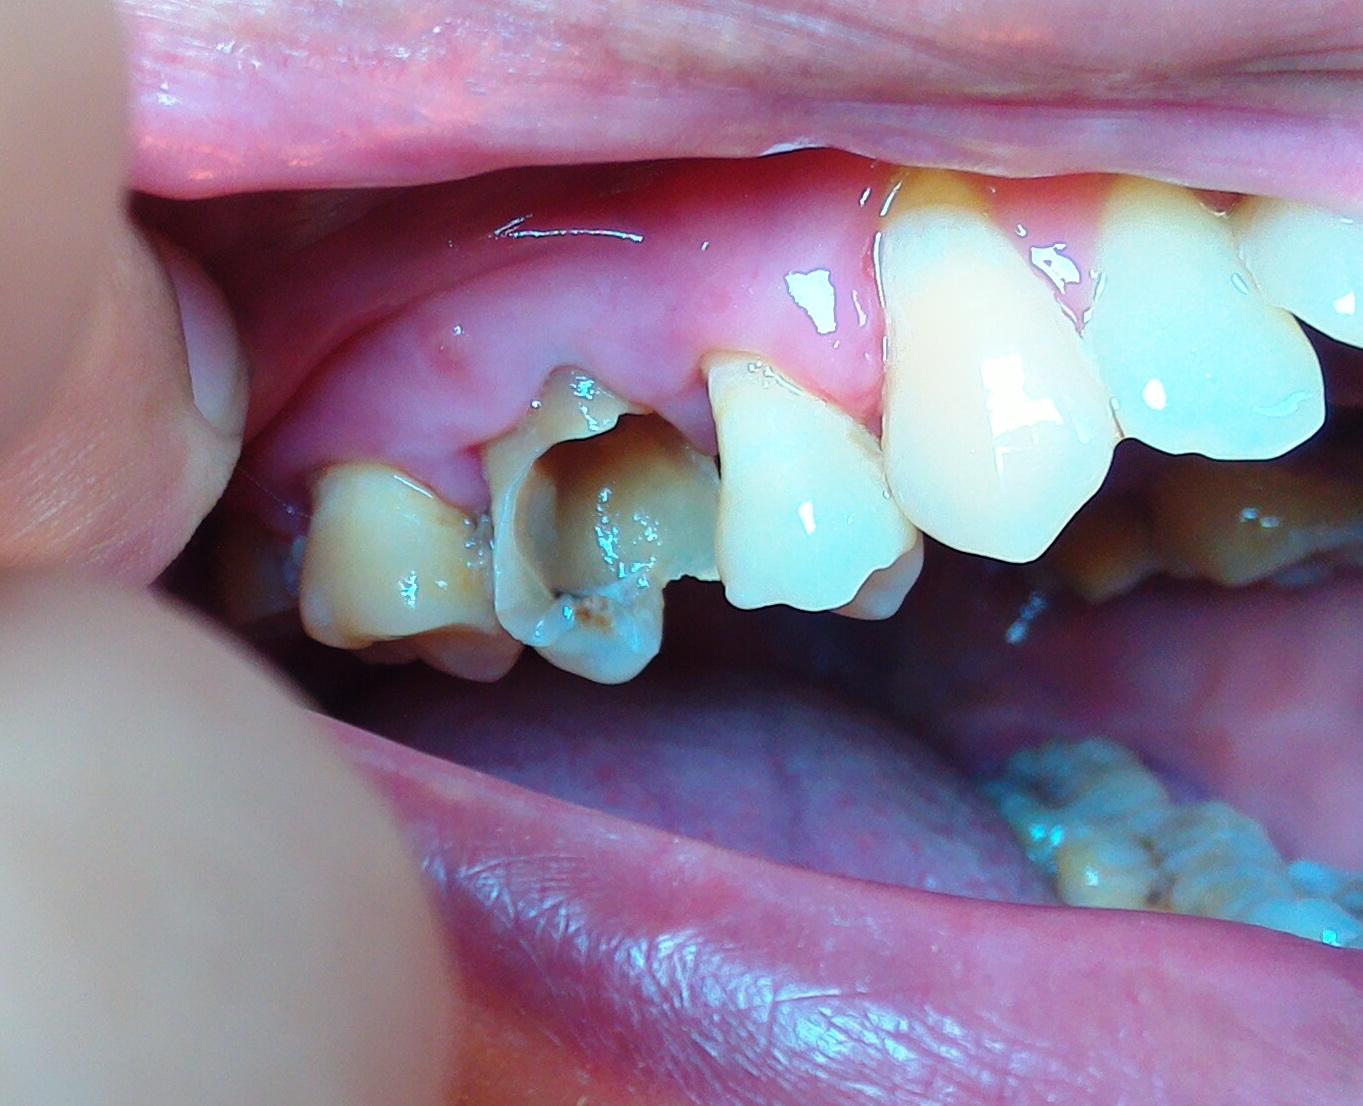 มีหนองในเหงือกที่บวมจากการอมน้ำเกลือเพื่อแก้ปวดฟัน  อย่างที่ทันตแพทย์หรือผู้รู้ทั้งหลายได้บอกเอาไว้จริง ๆ ด้วย - Pantip